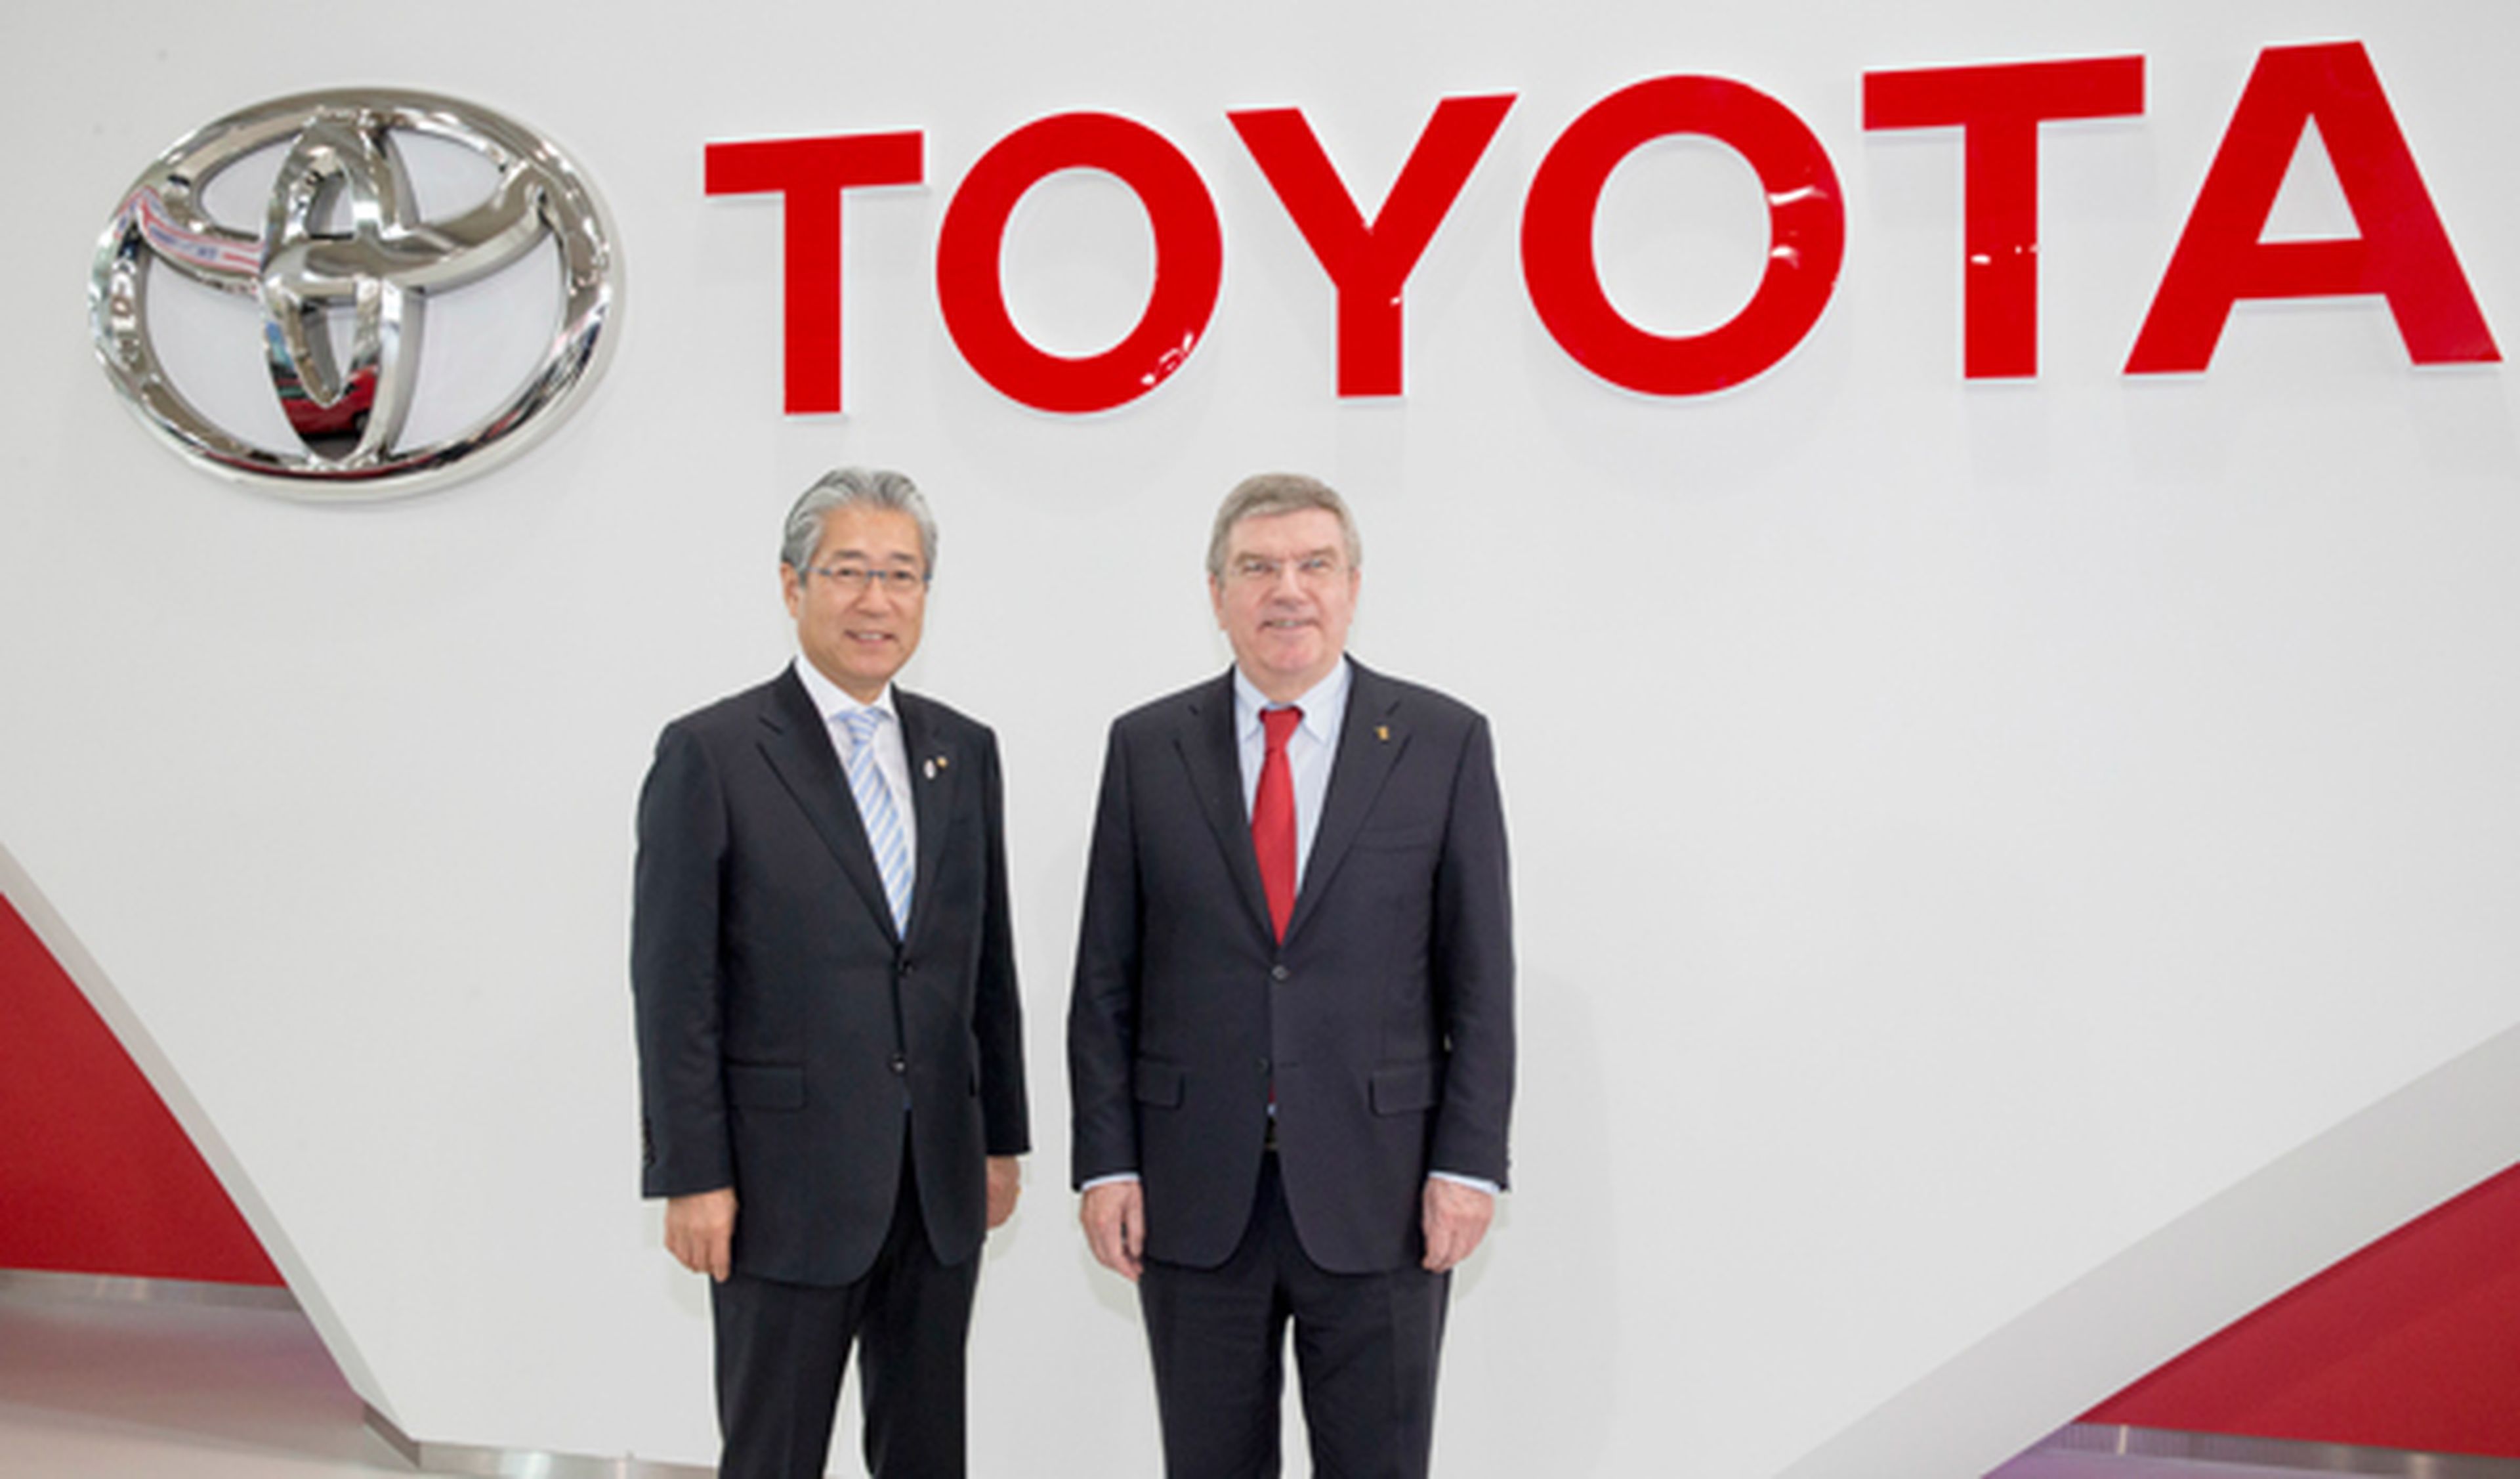 Comienzan las 'Olimpiadas Híbridas' gracias a Toyota